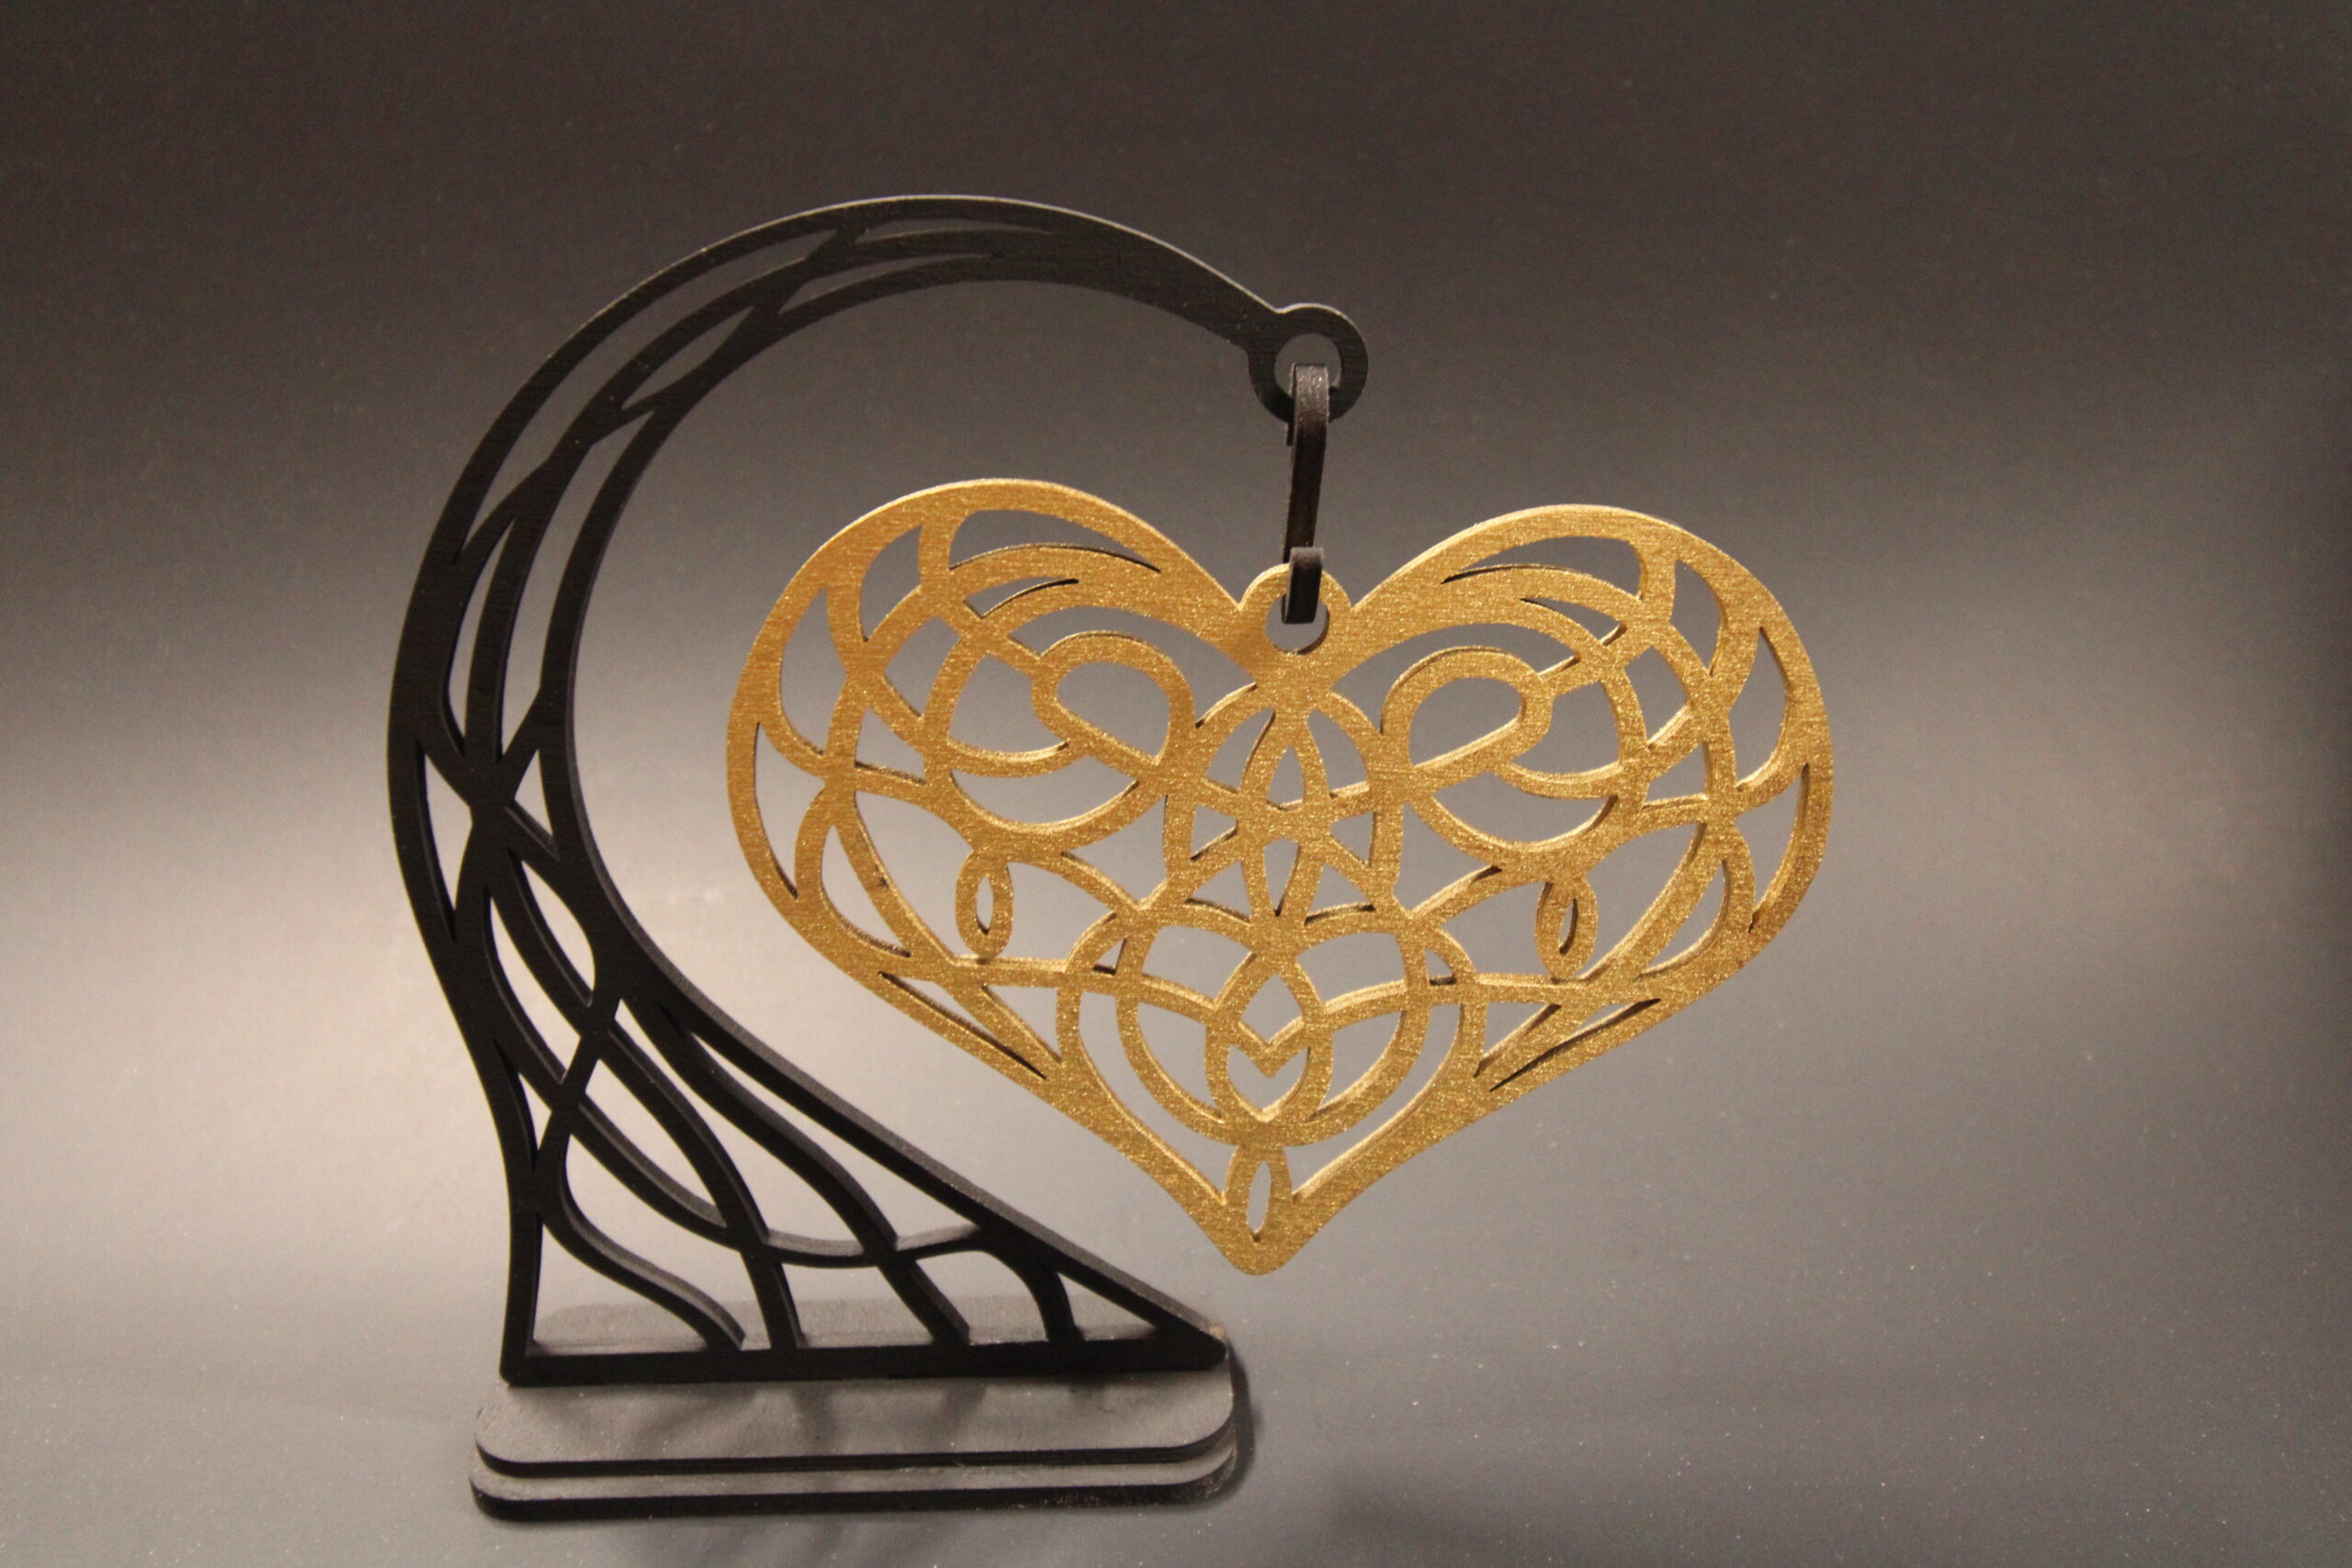 Custom laser cut golden heart for Valentine’s Day gift.